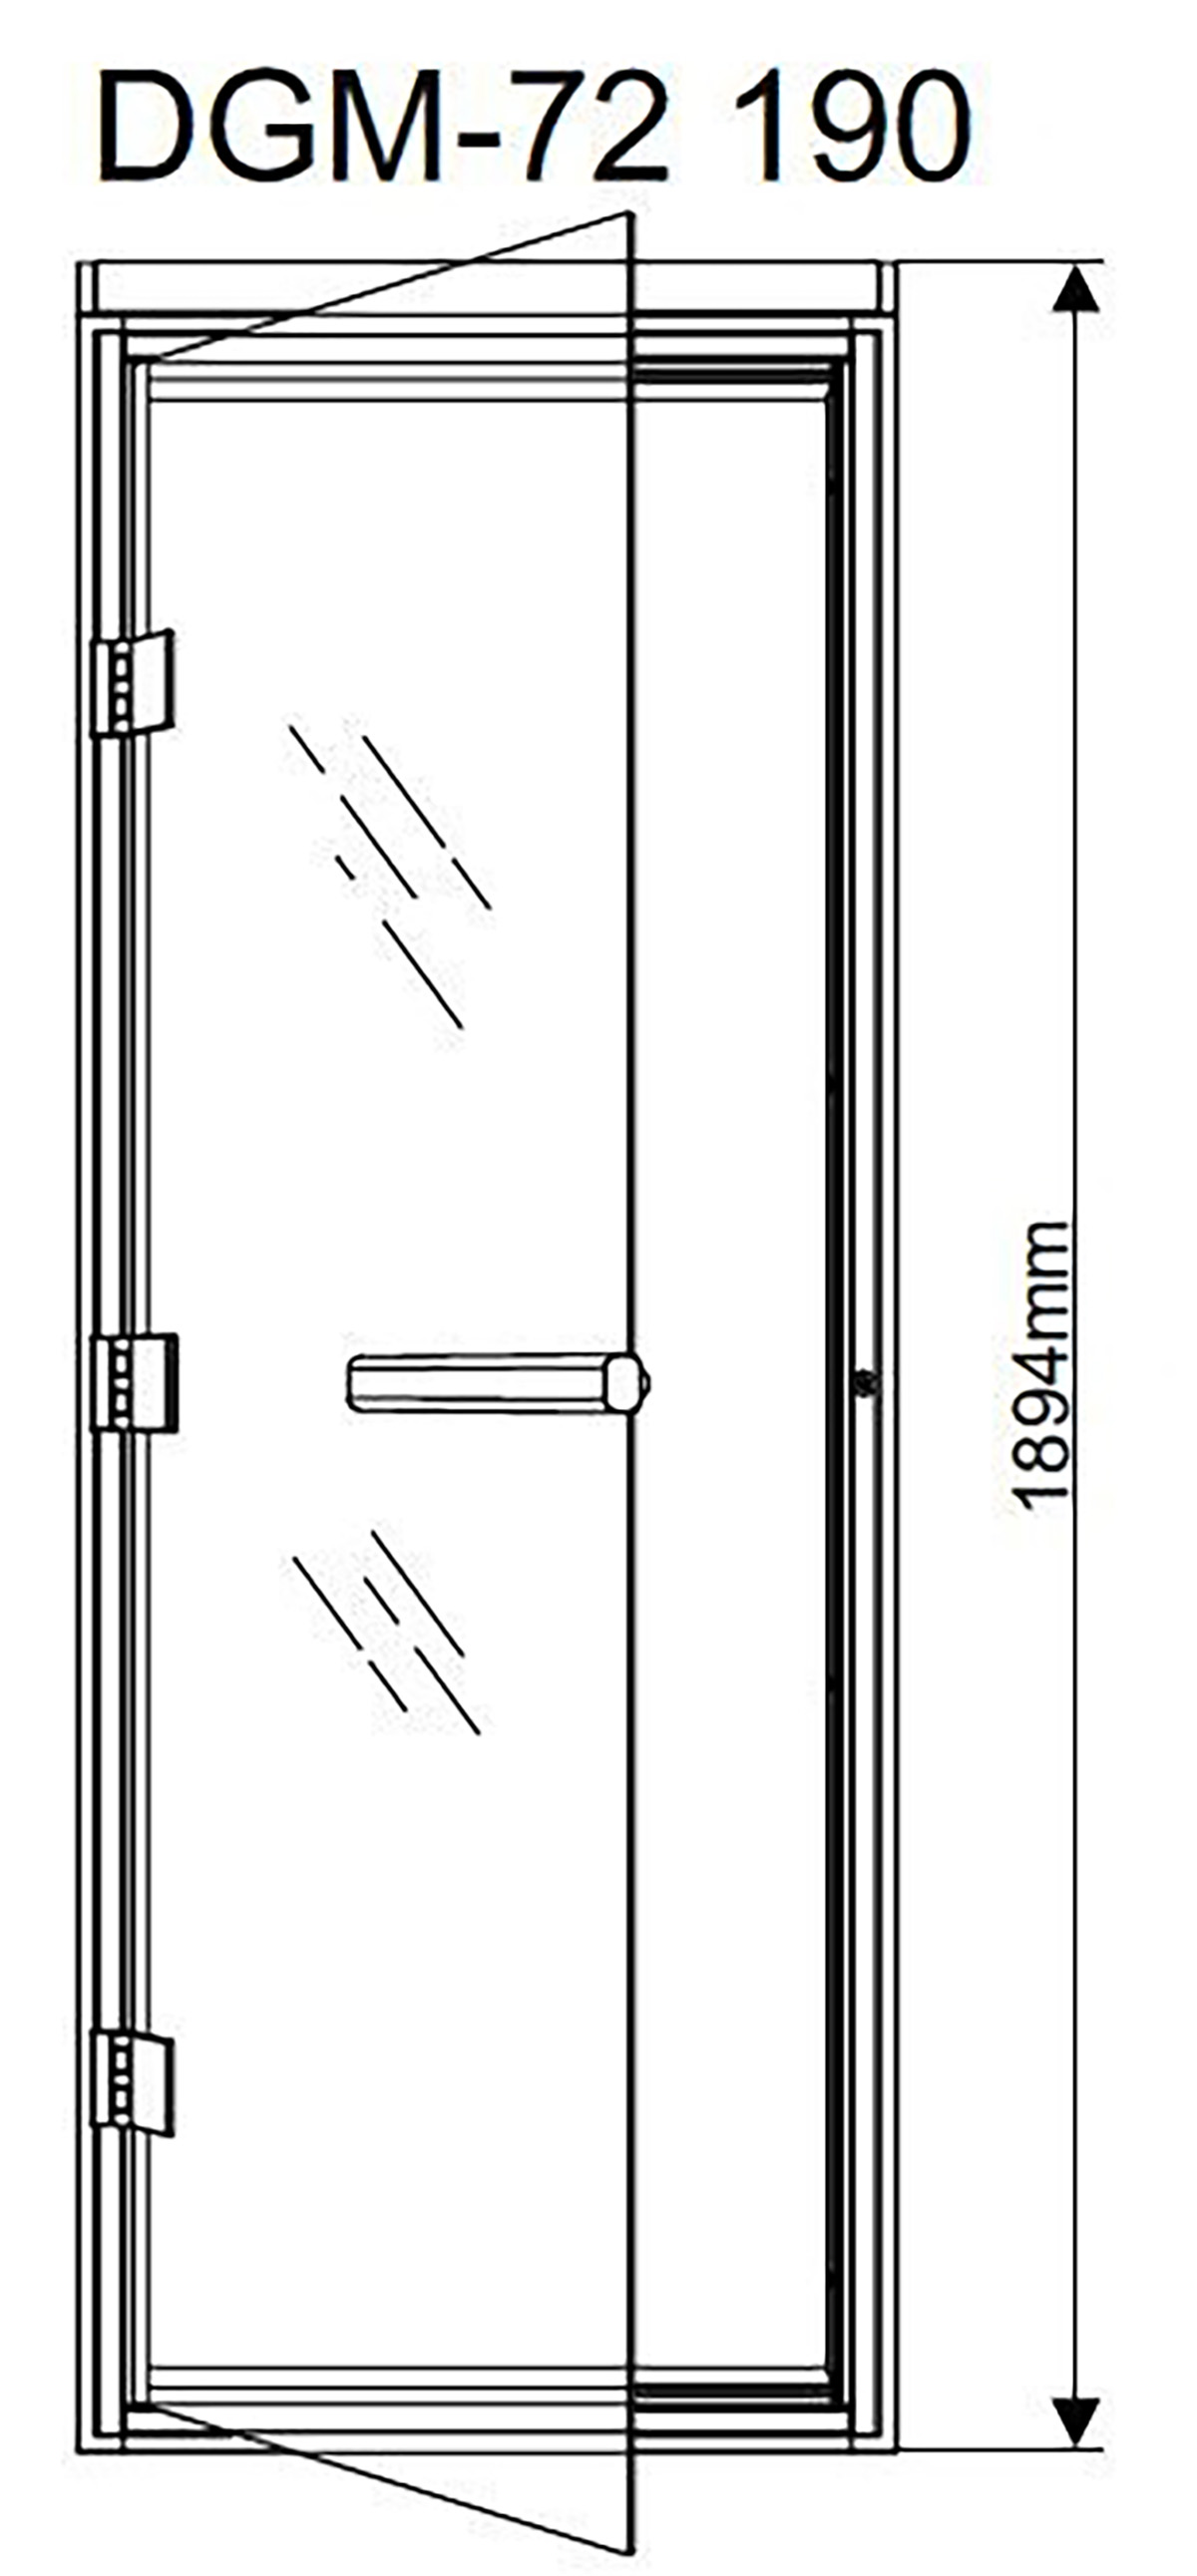 Размер банной двери